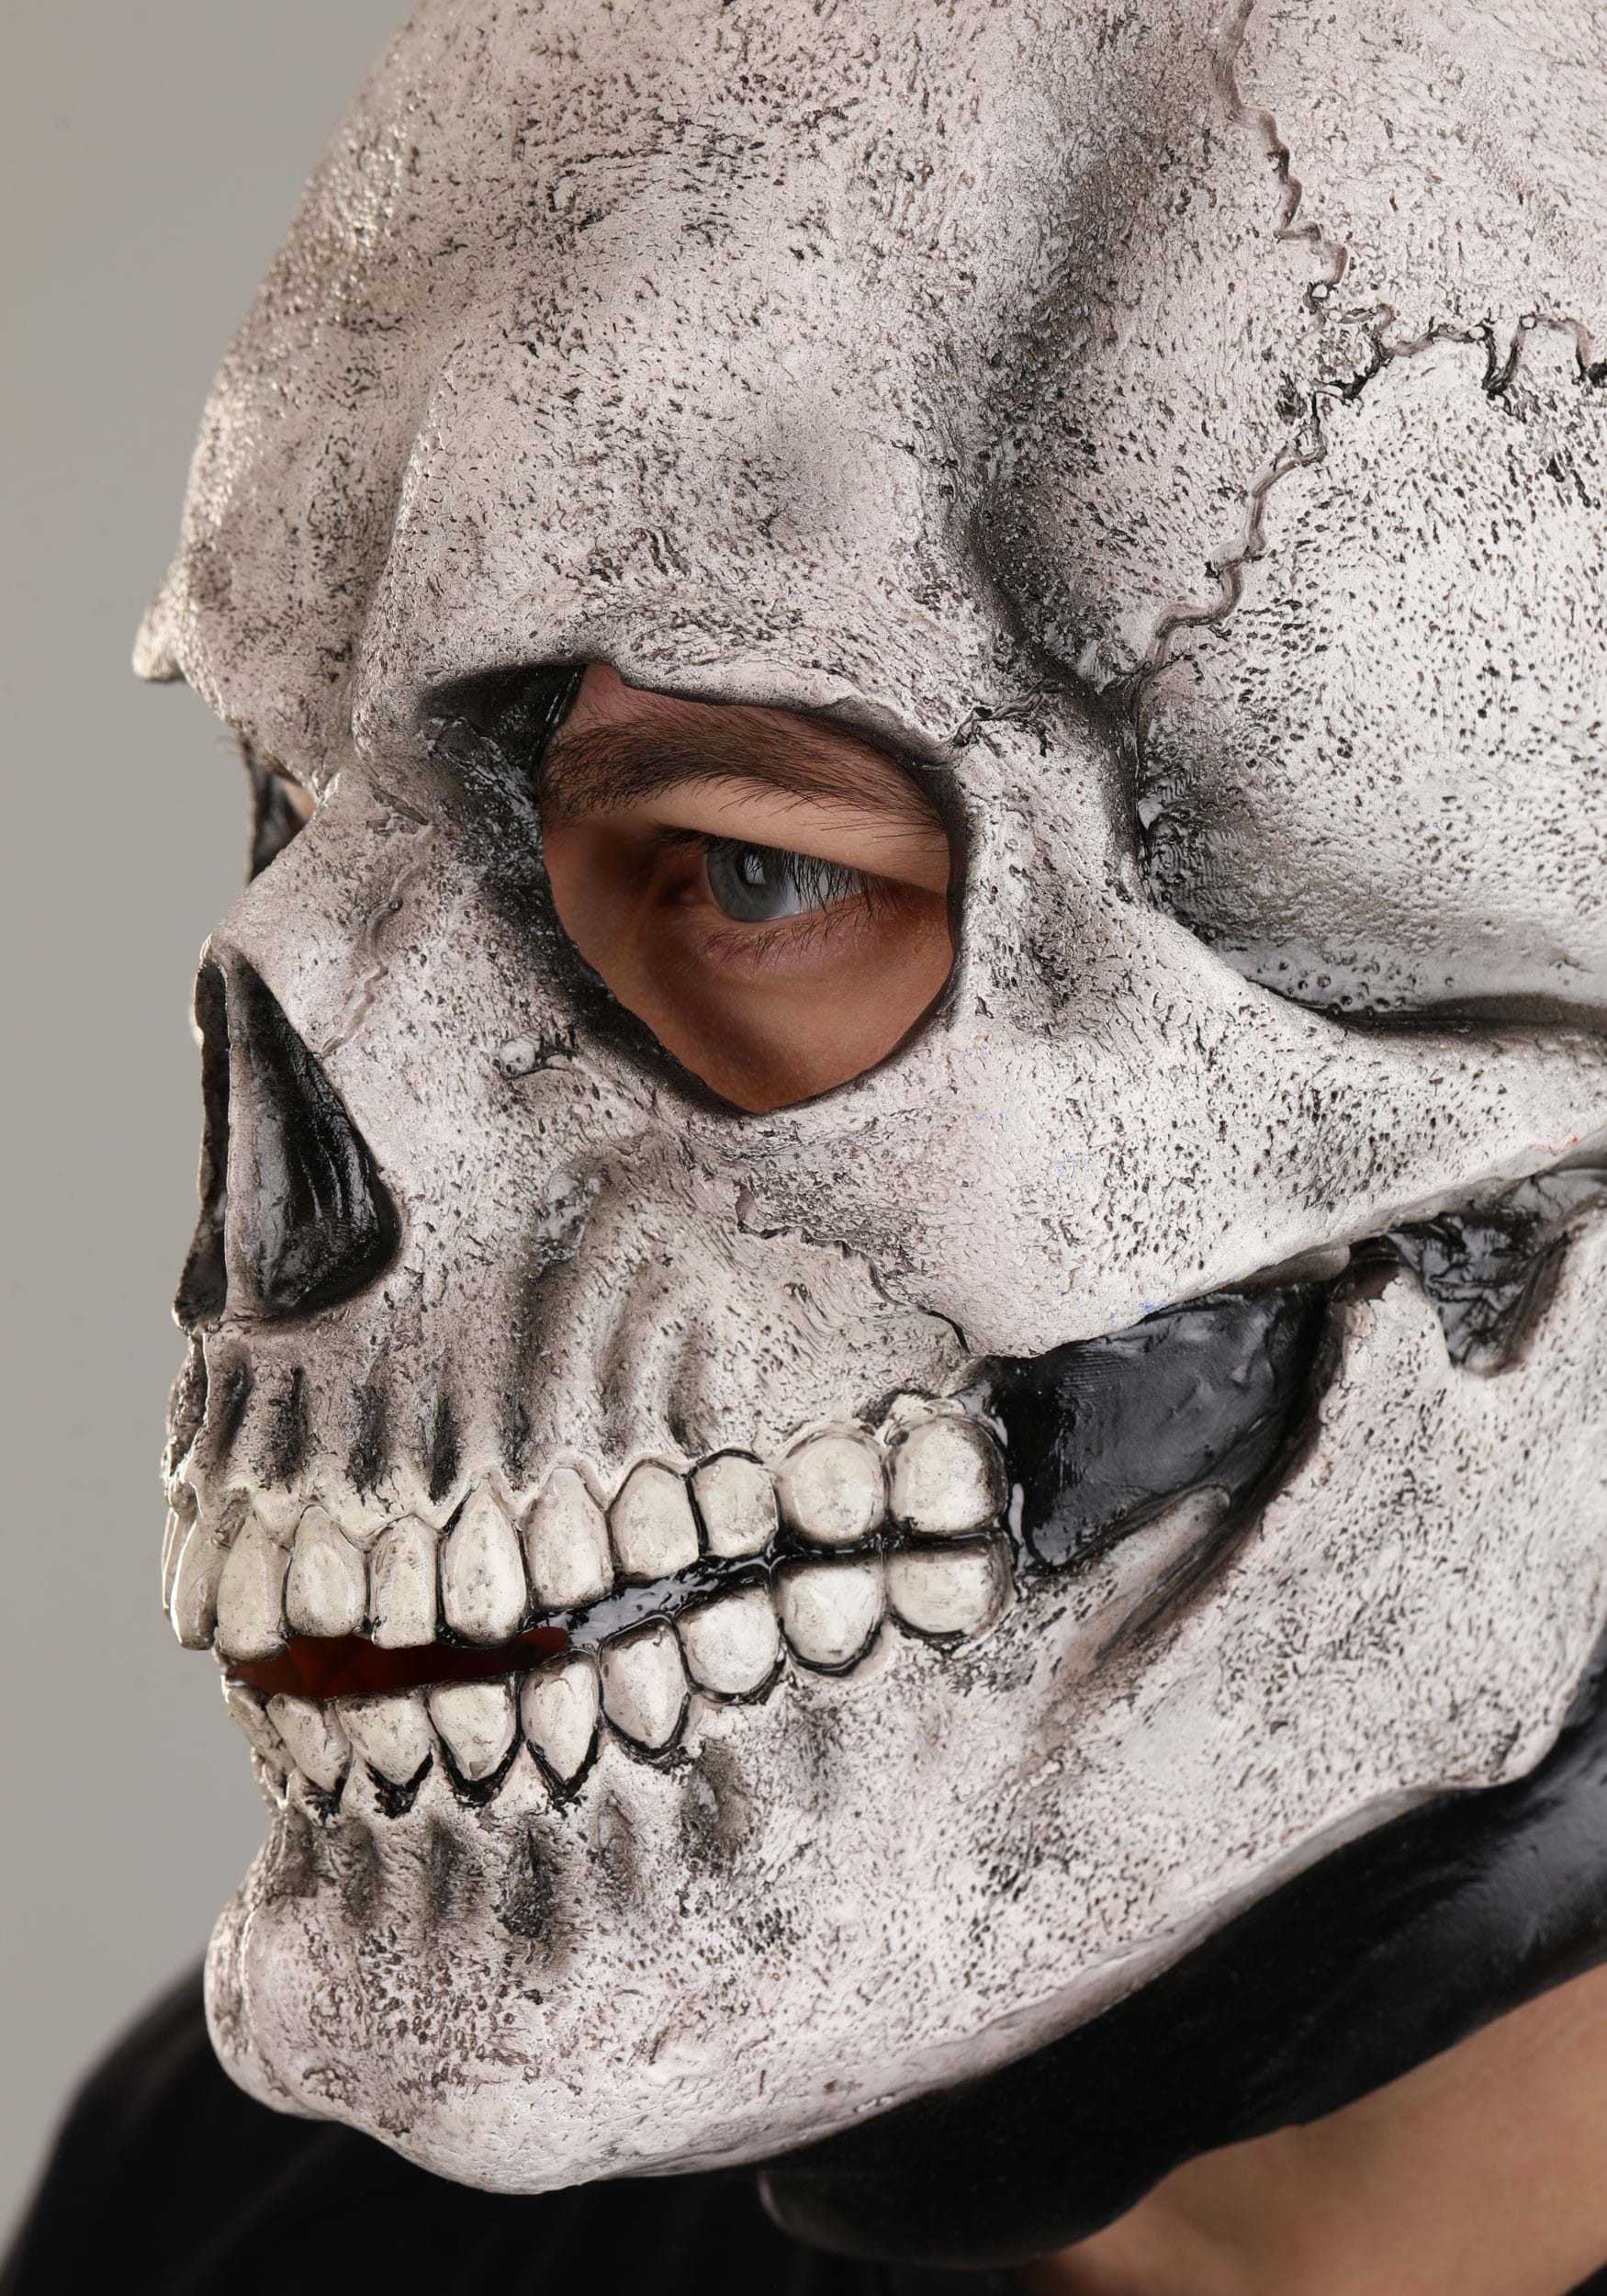 White Full Face Skeleton Mask